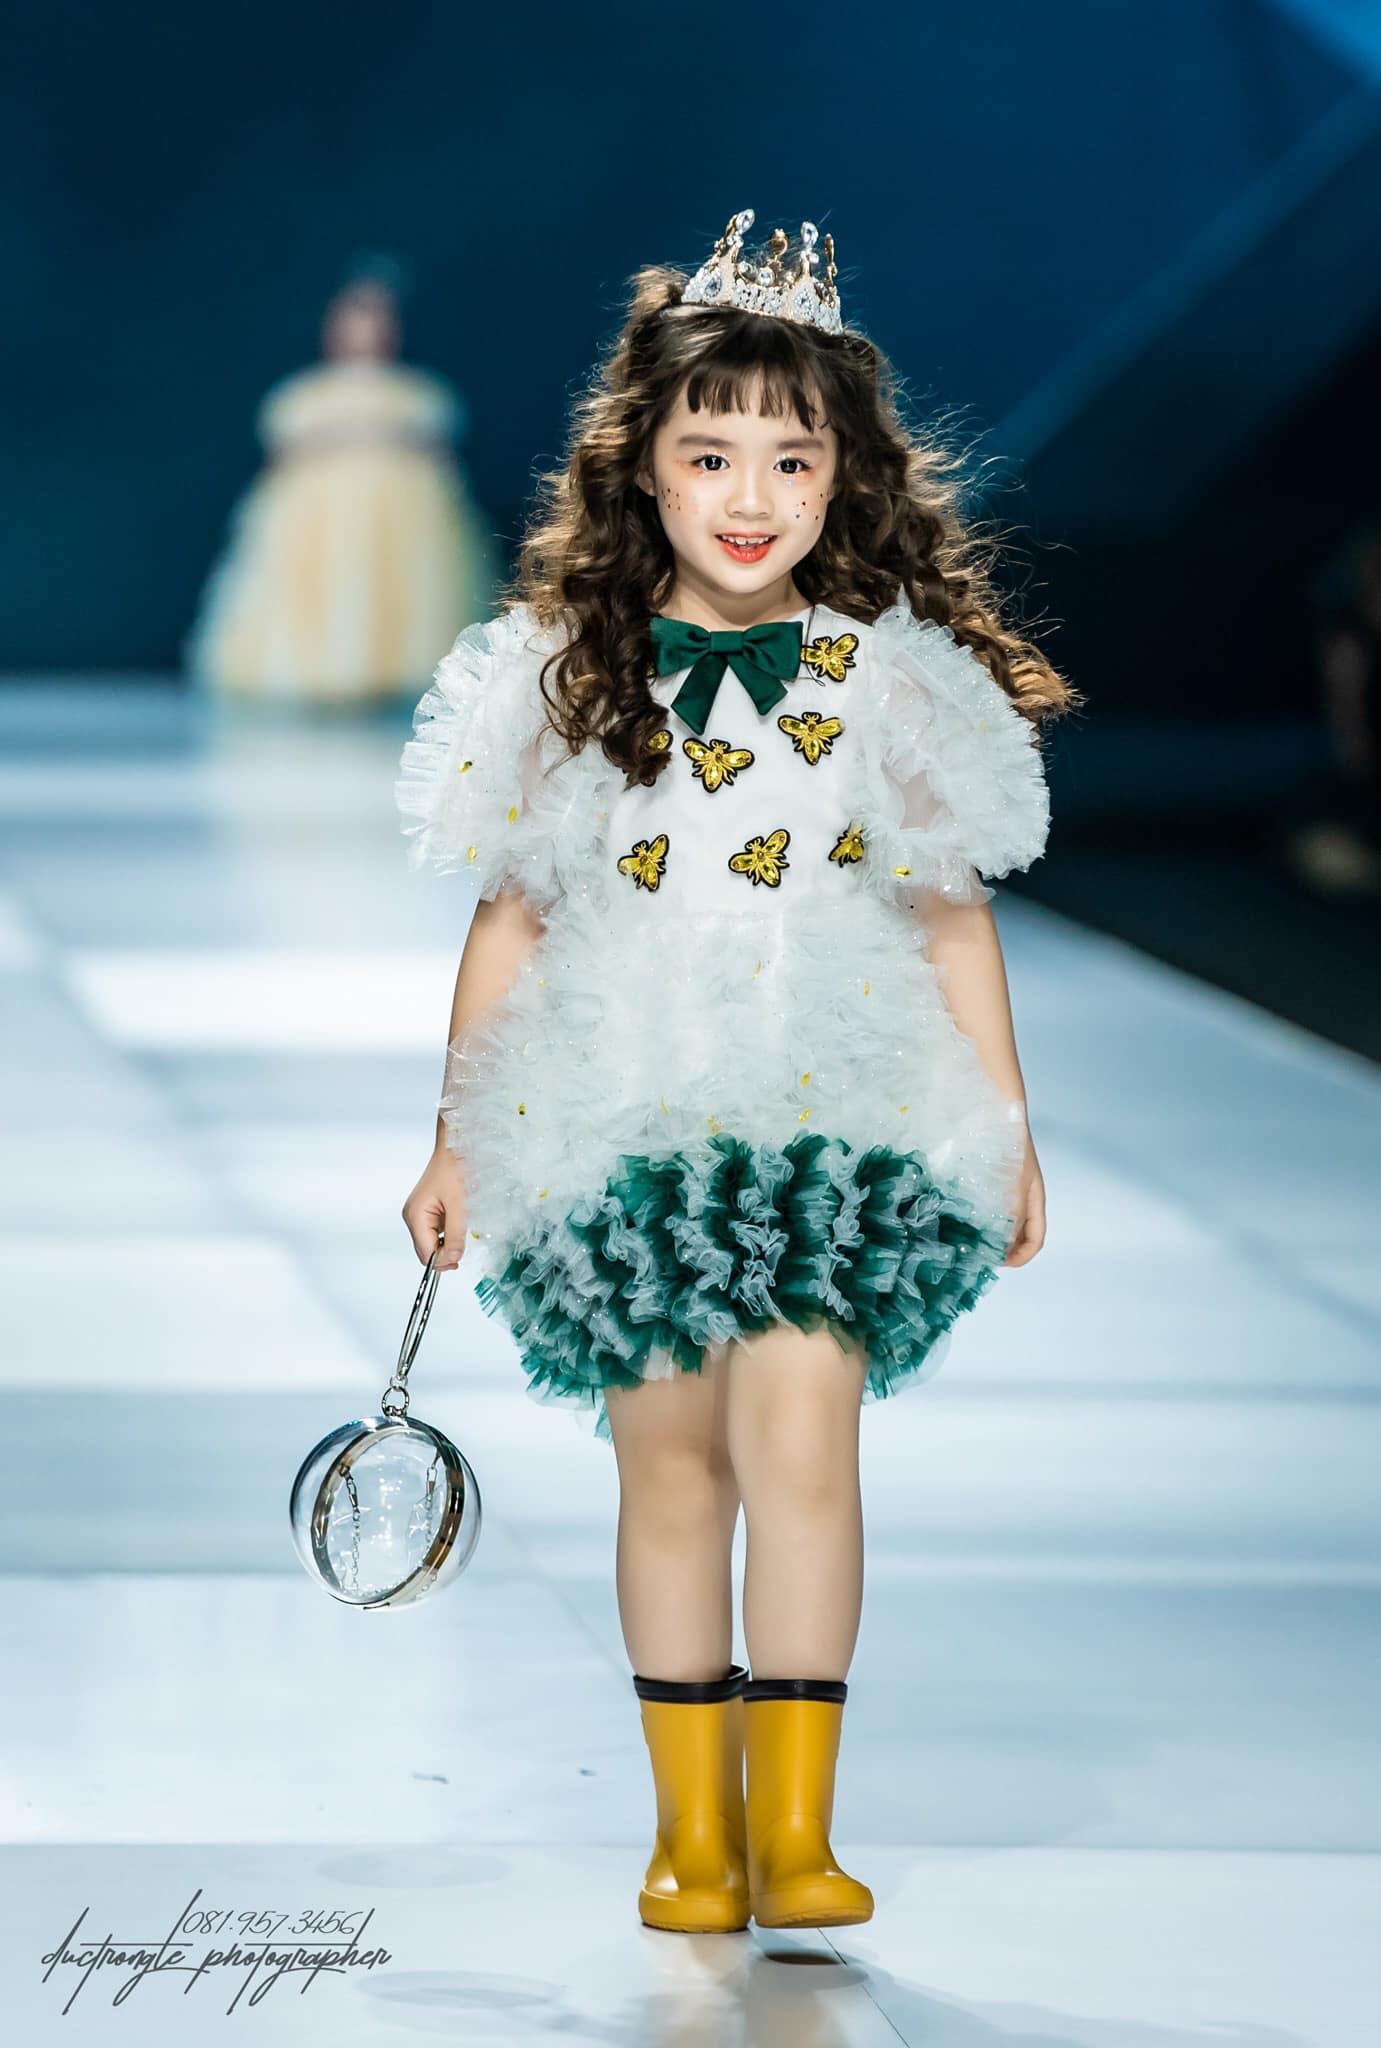 Mẫu nhí 8 tuổi gây sốt với thần thái và gu thời trang sành điệu như sao Hàn, xem qua profile càng bất ngờ - ảnh 1